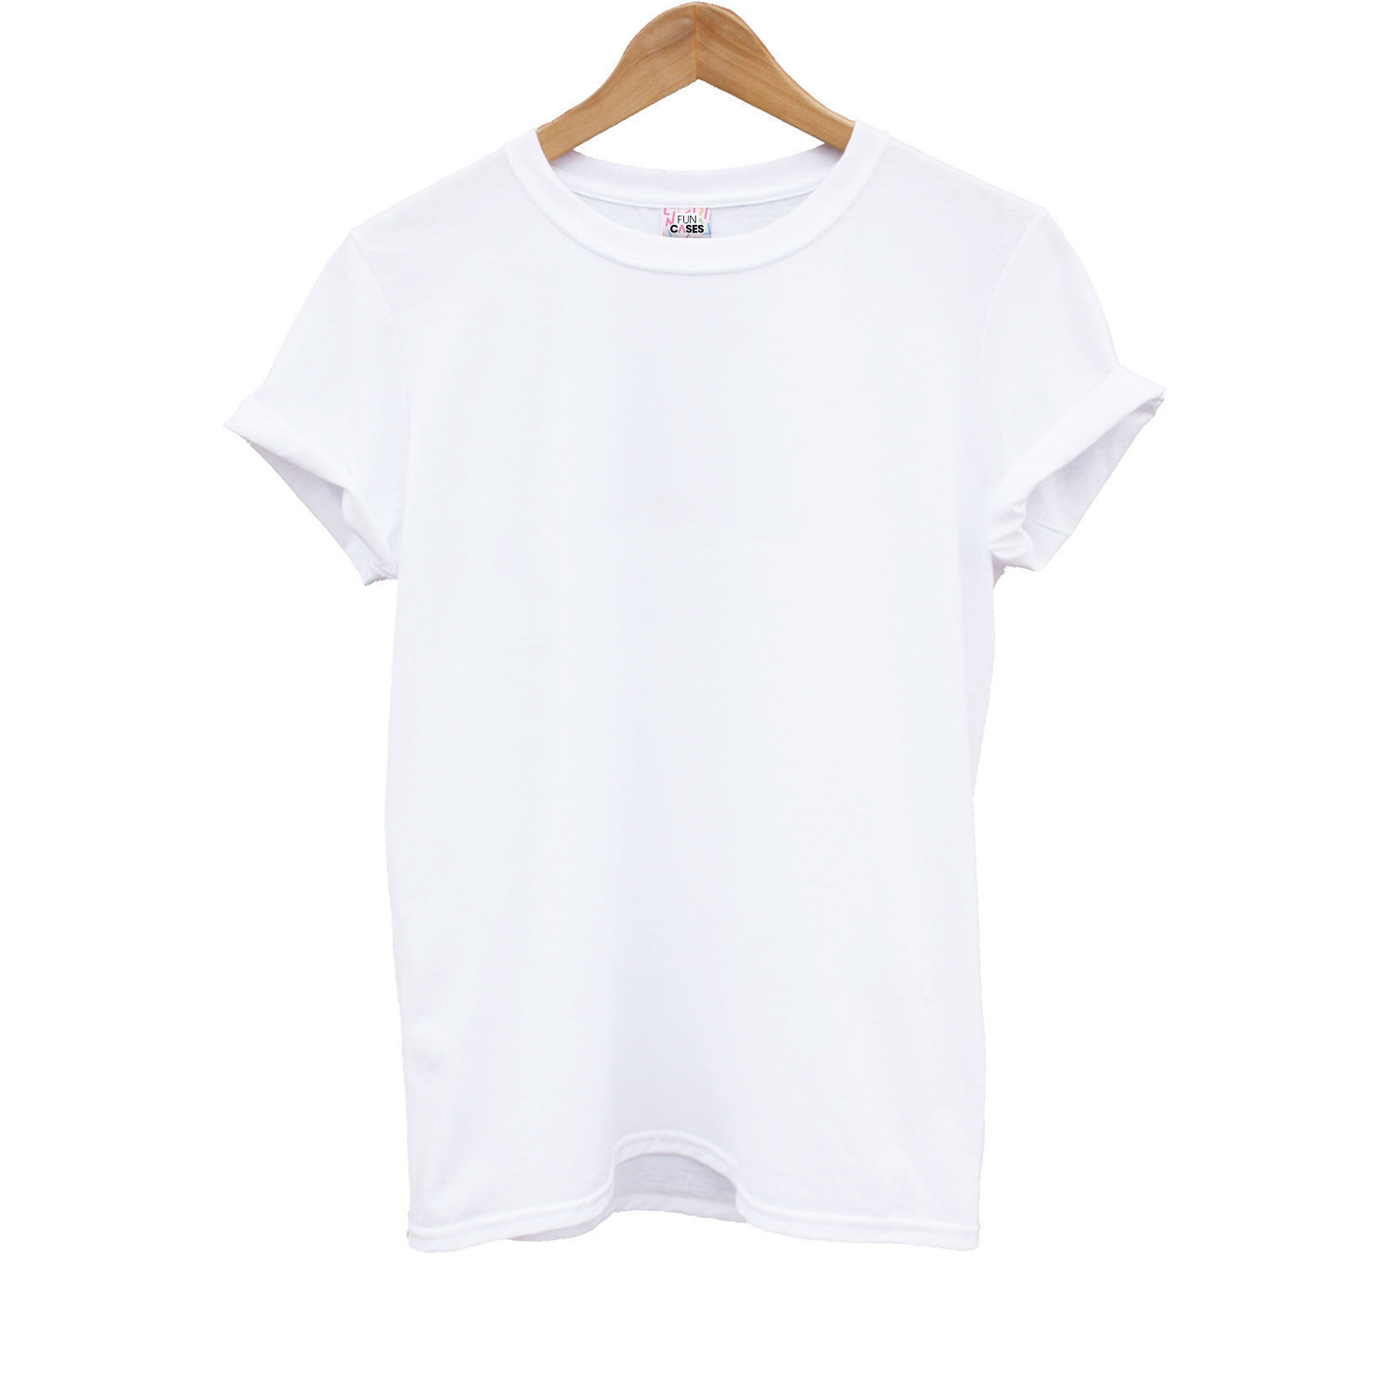 Plain White Kids T-Shirt